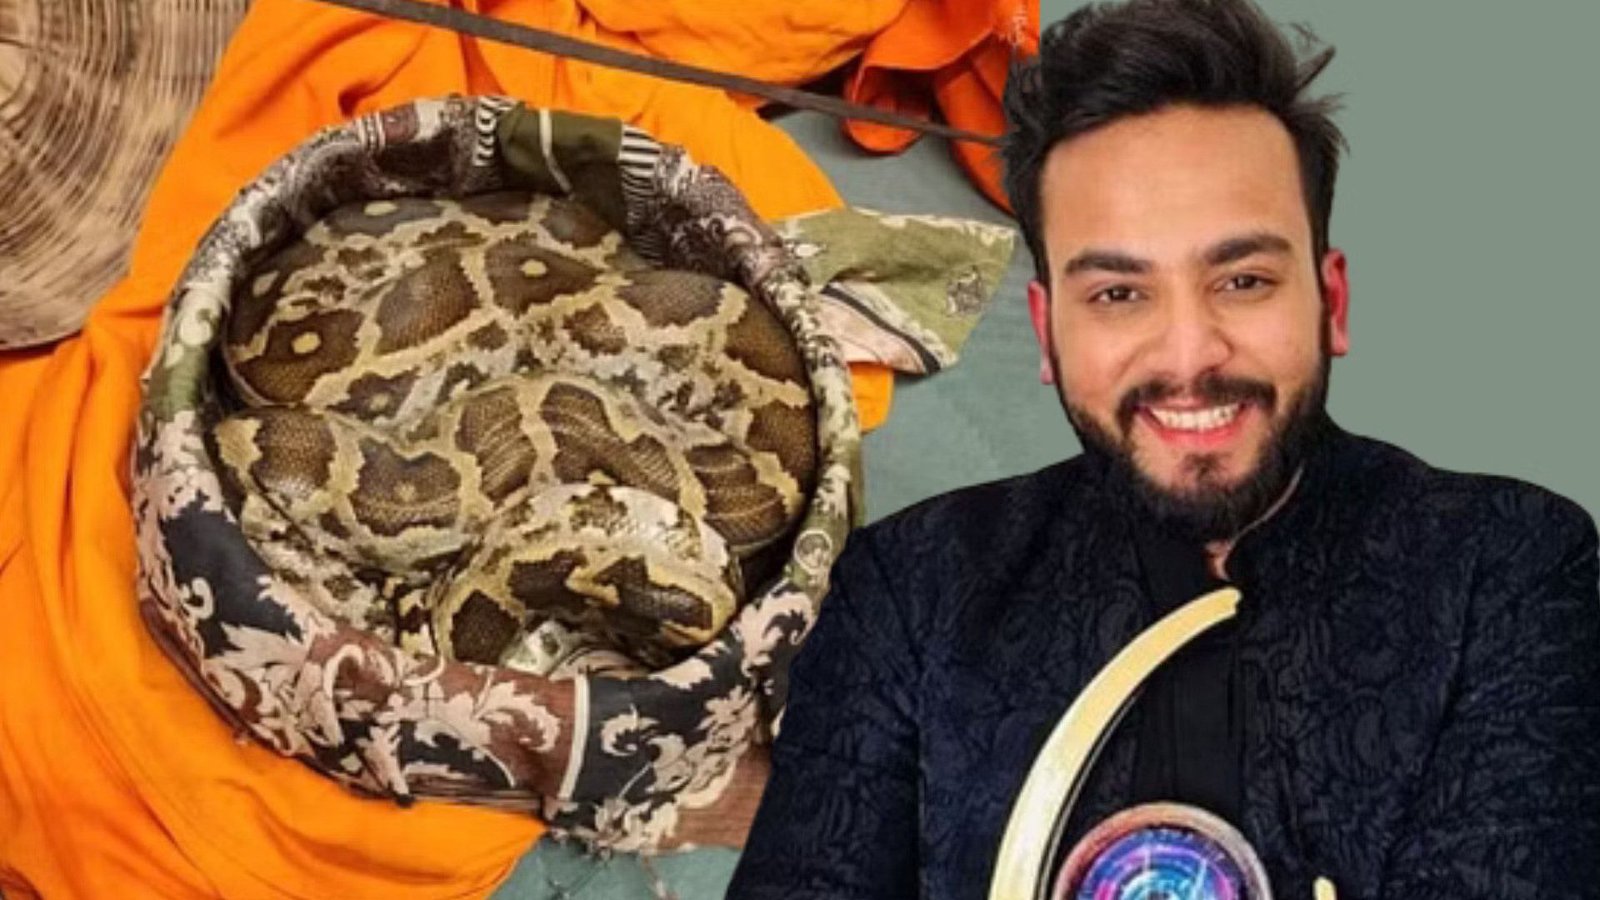 Indian YouTuber Elvish Yadav arrested for supplying snake venom as party drug